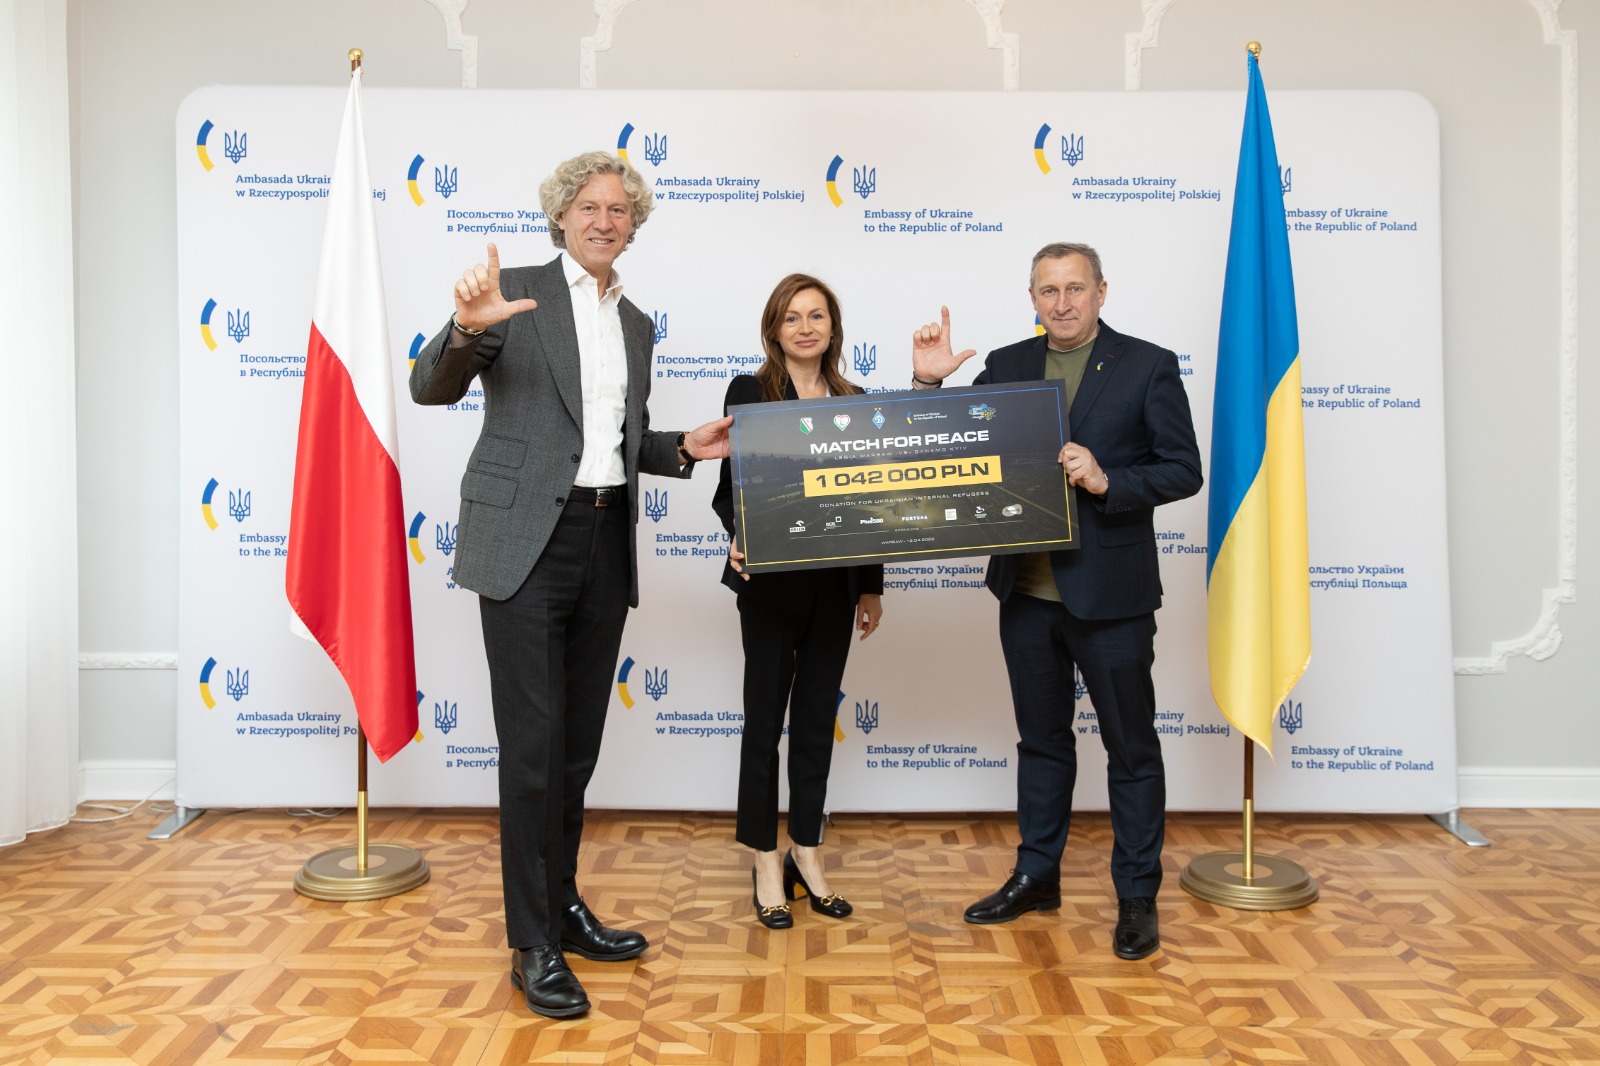 Ponad milion złotych dla uchodźców wewnętrznych na Ukrainie dzięki spotkaniu Legia Warszawa – Dynamo Kijów (WIDEO)